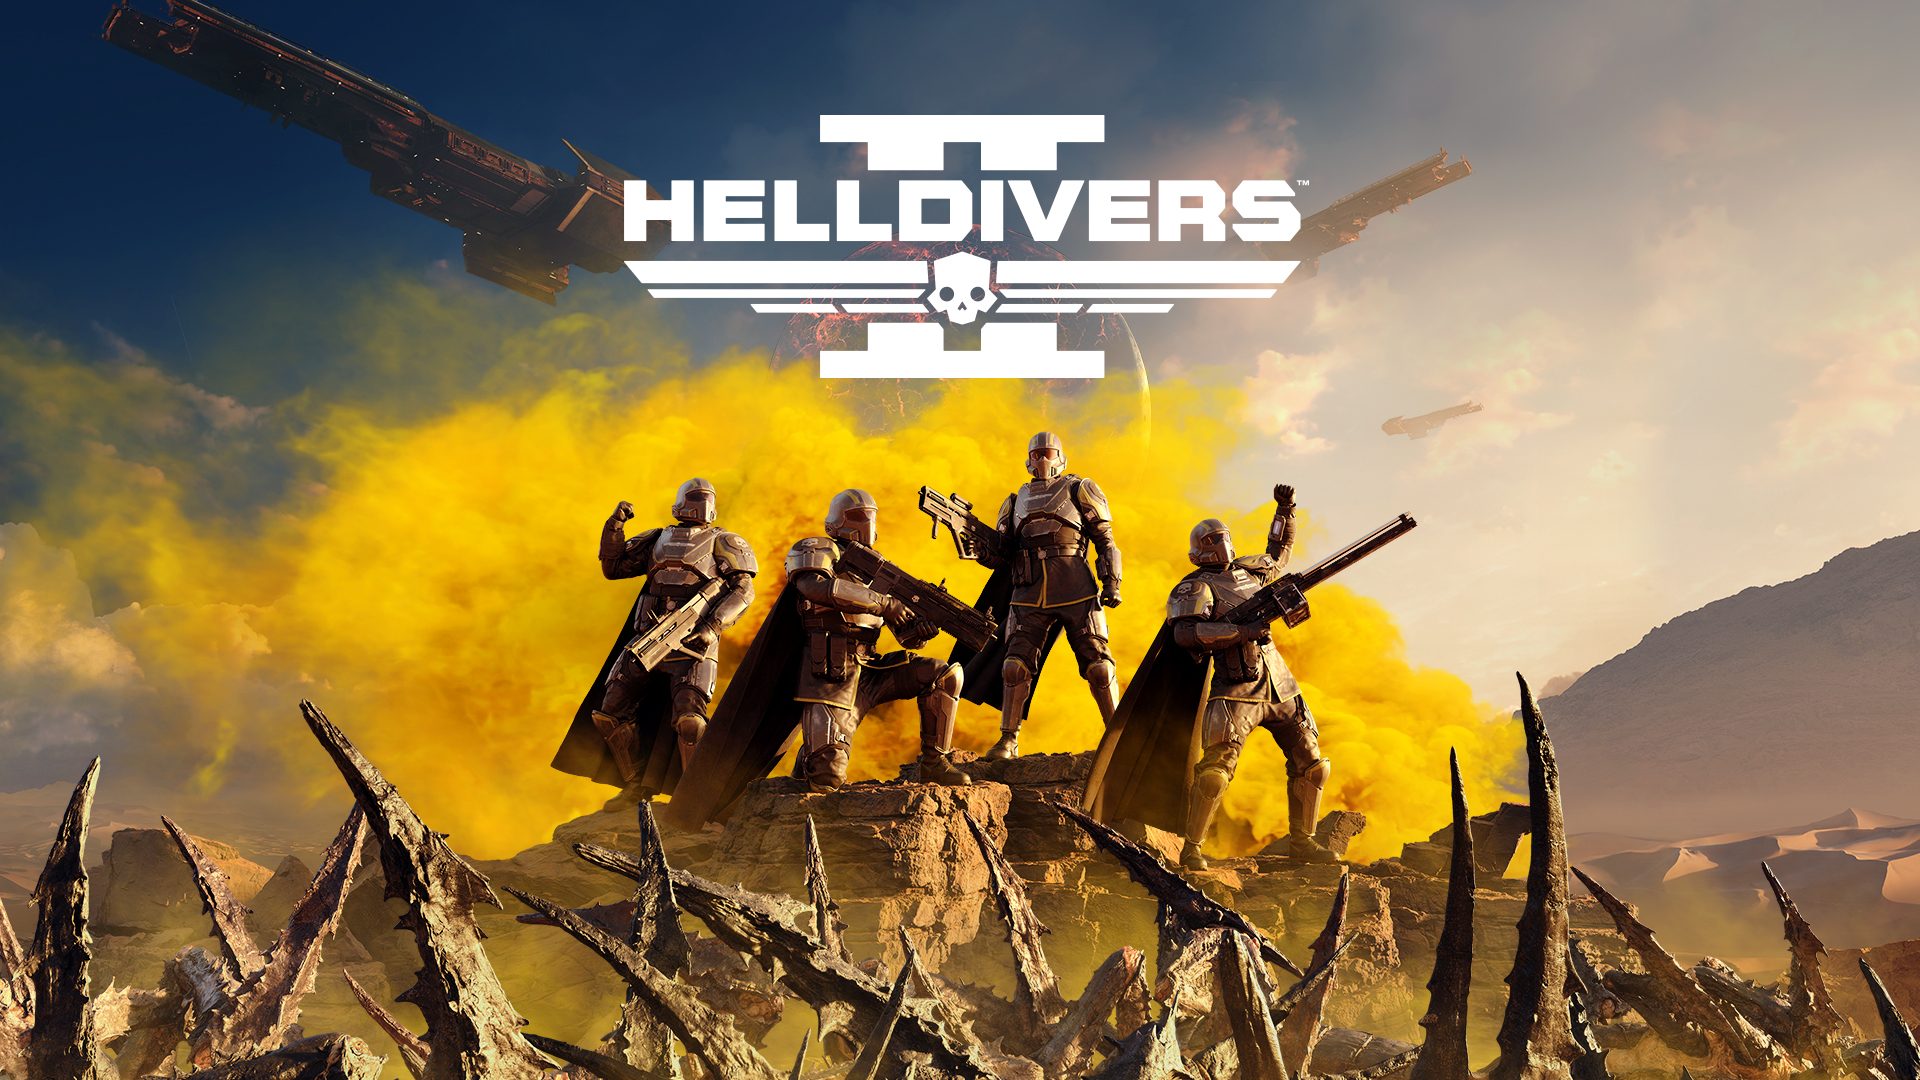 Todojuegos.cl - Lanzamiento Confirmado Helldivers 2 Playstation 5 Revisalo  aca…  #Helldivers2 #play5 #lanzamiento #todojuegos  #Arrowhead